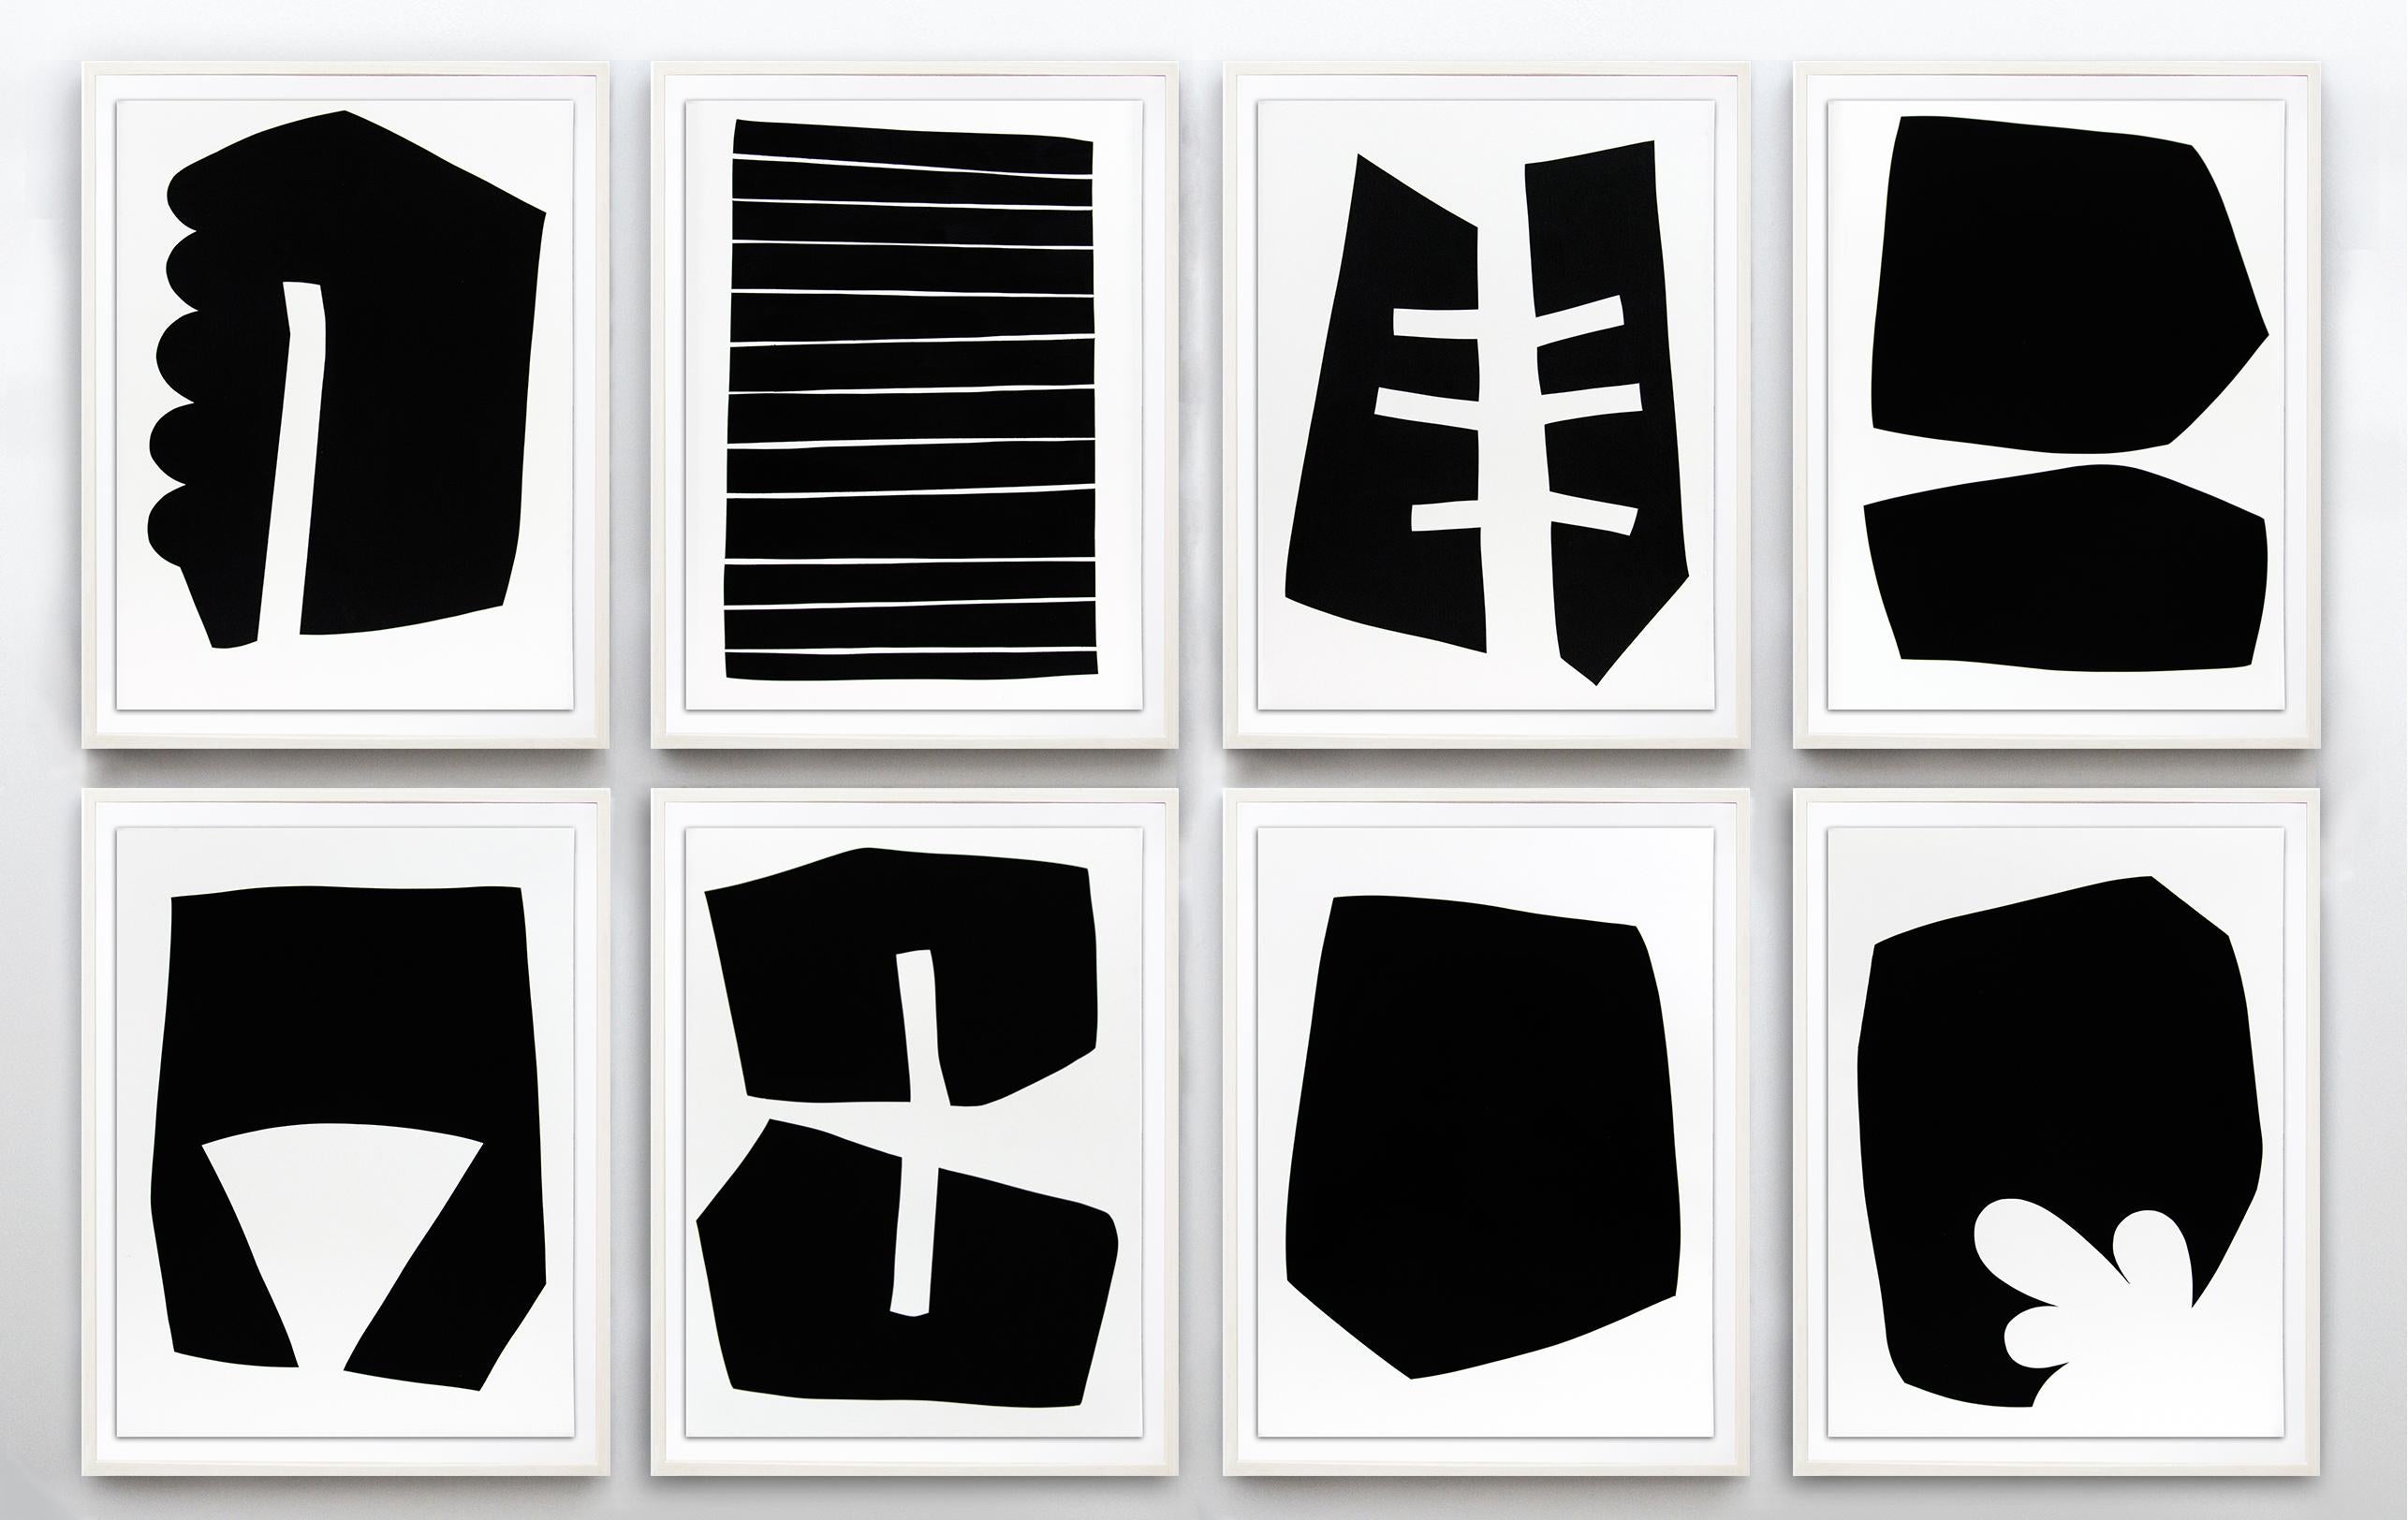 Suite von acht Drucken (Ausgabe 9/20) – Serie abstrakter Formen auf Papier